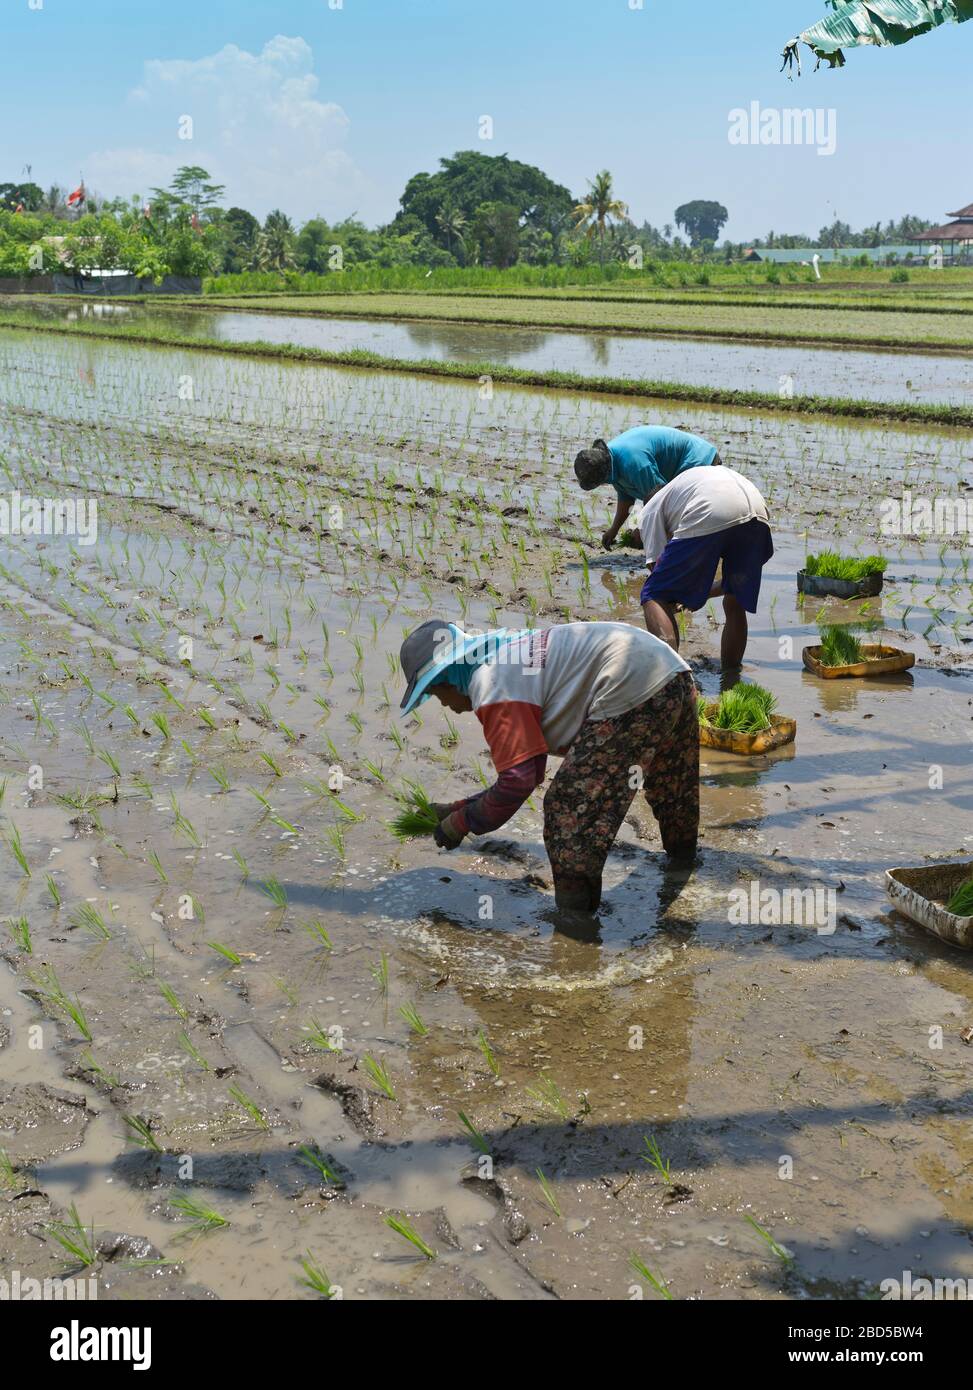 dh travailleurs balinais locaux gens BALI INDONÉSIE planter du riz dans les rizières des champs d'élevage de travailleurs rizières la femme indonésienne en asie du sud-est femmes Banque D'Images